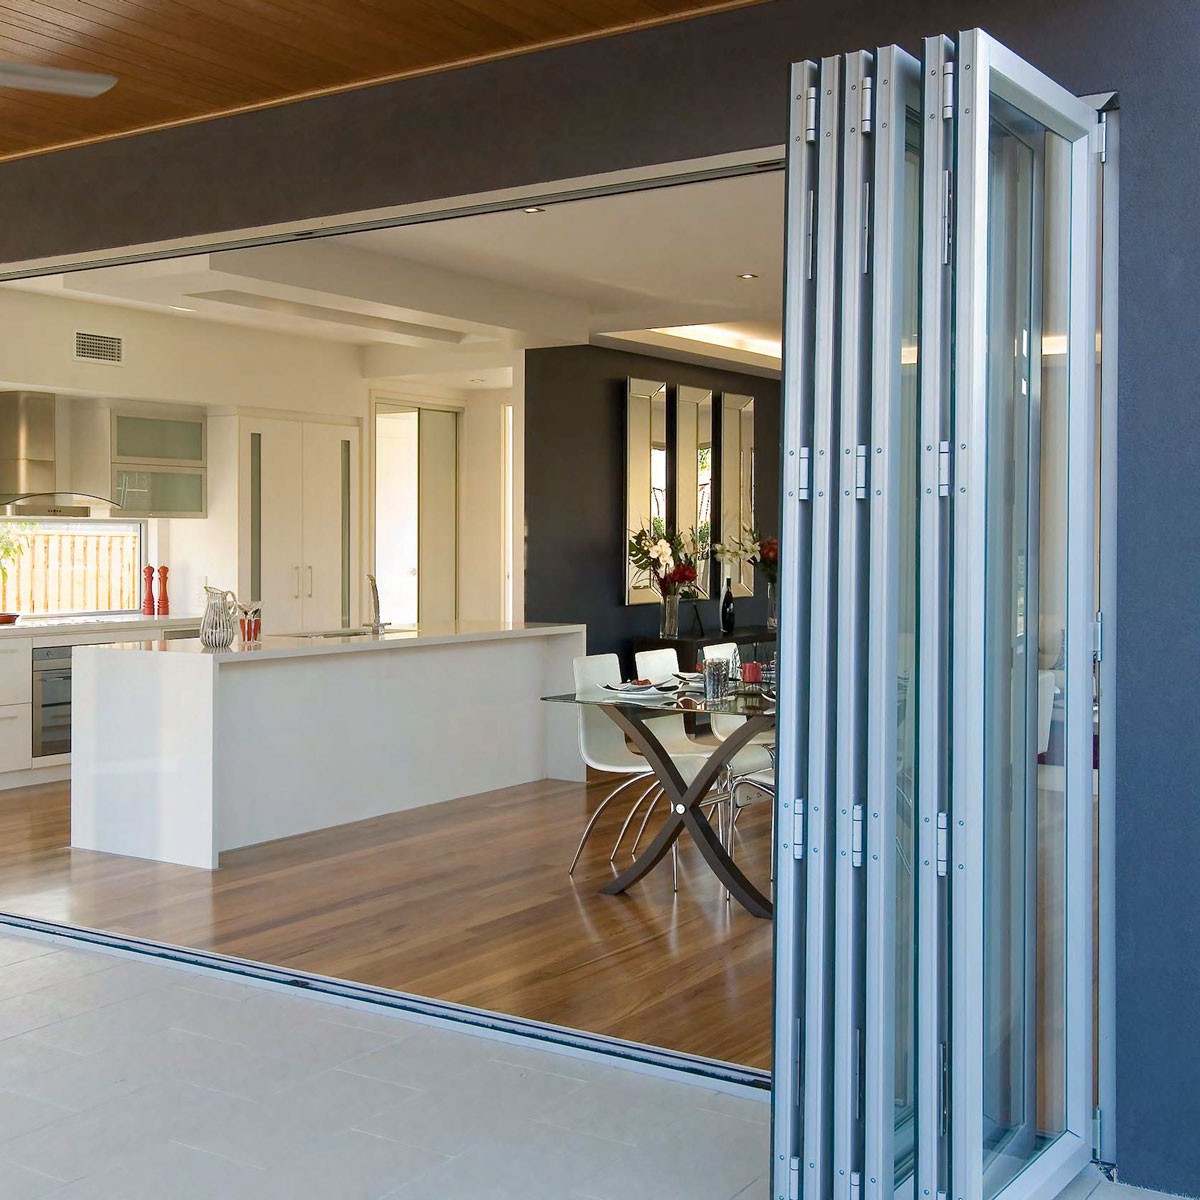 bi fold doors between kitchen and patio